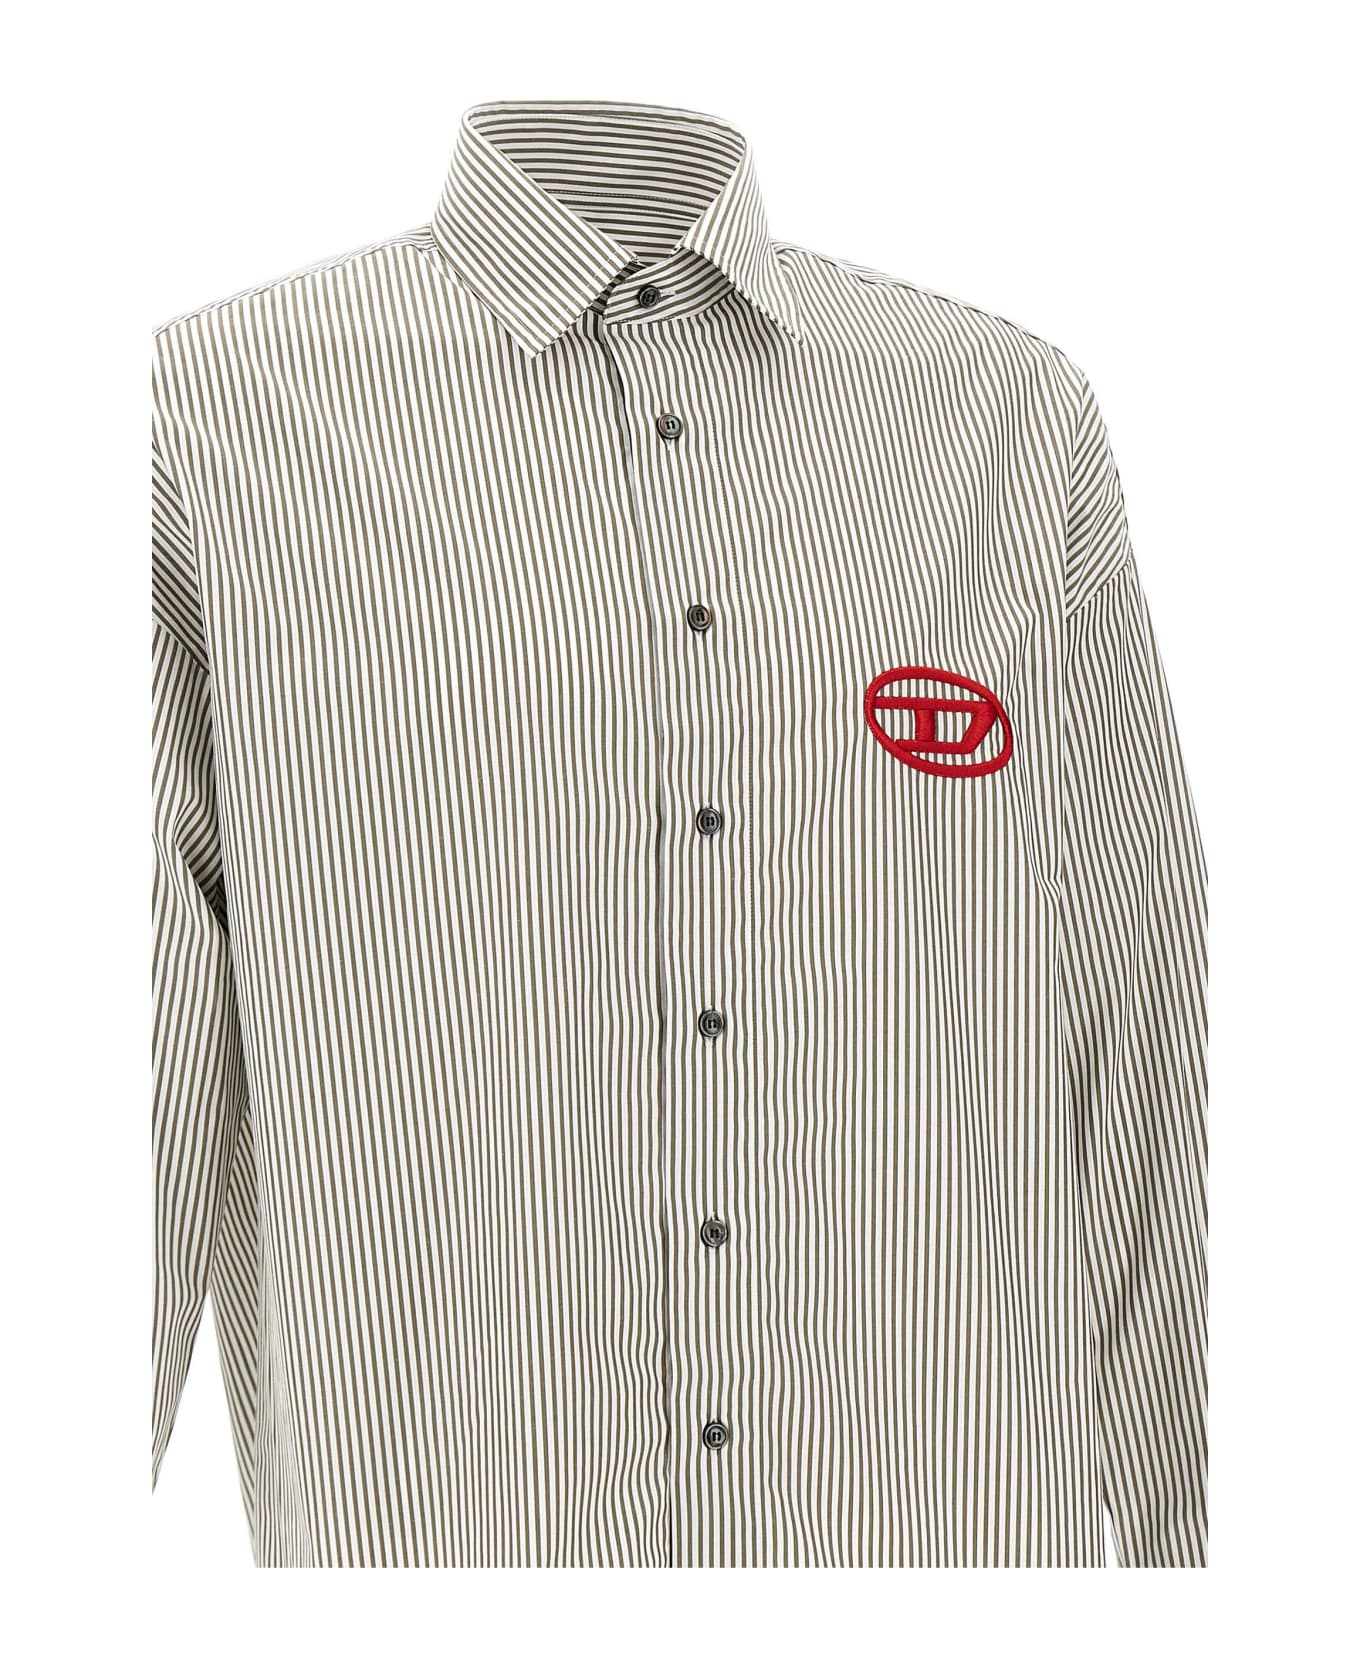 Diesel "s-douber"cotton Shirt - GREY/WHITE シャツ